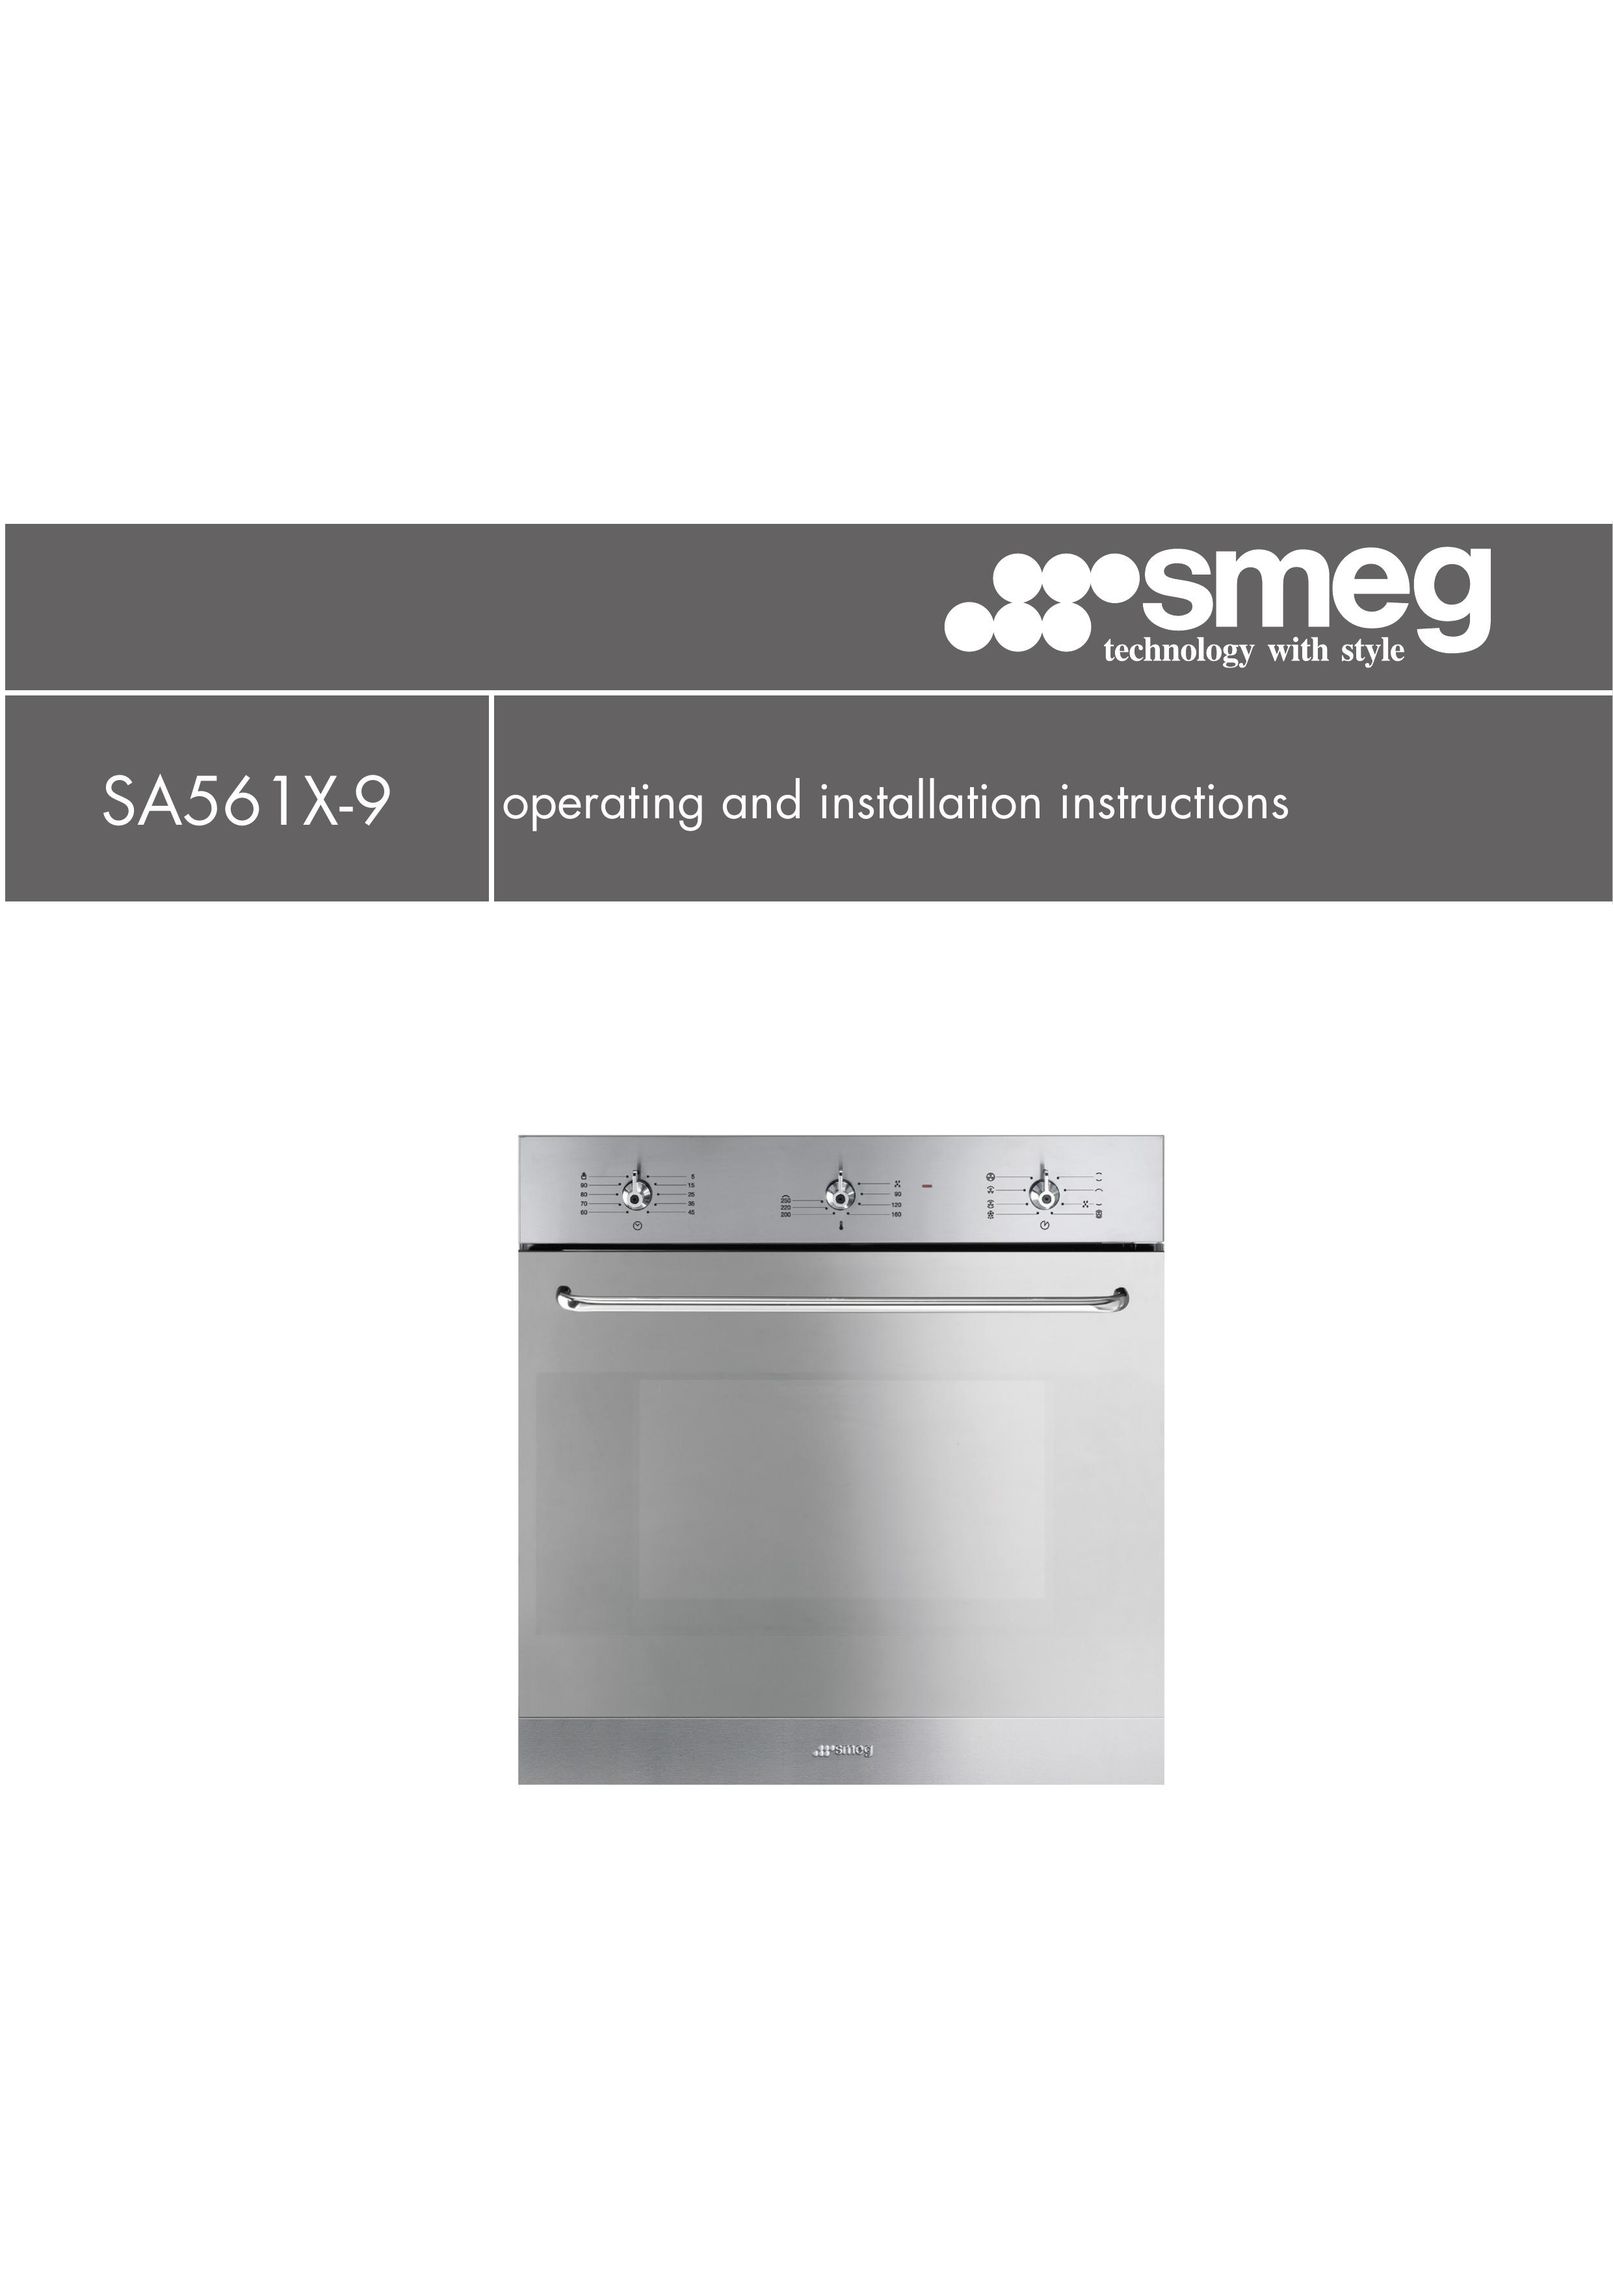 Smeg SA561X-9 Convection Oven User Manual